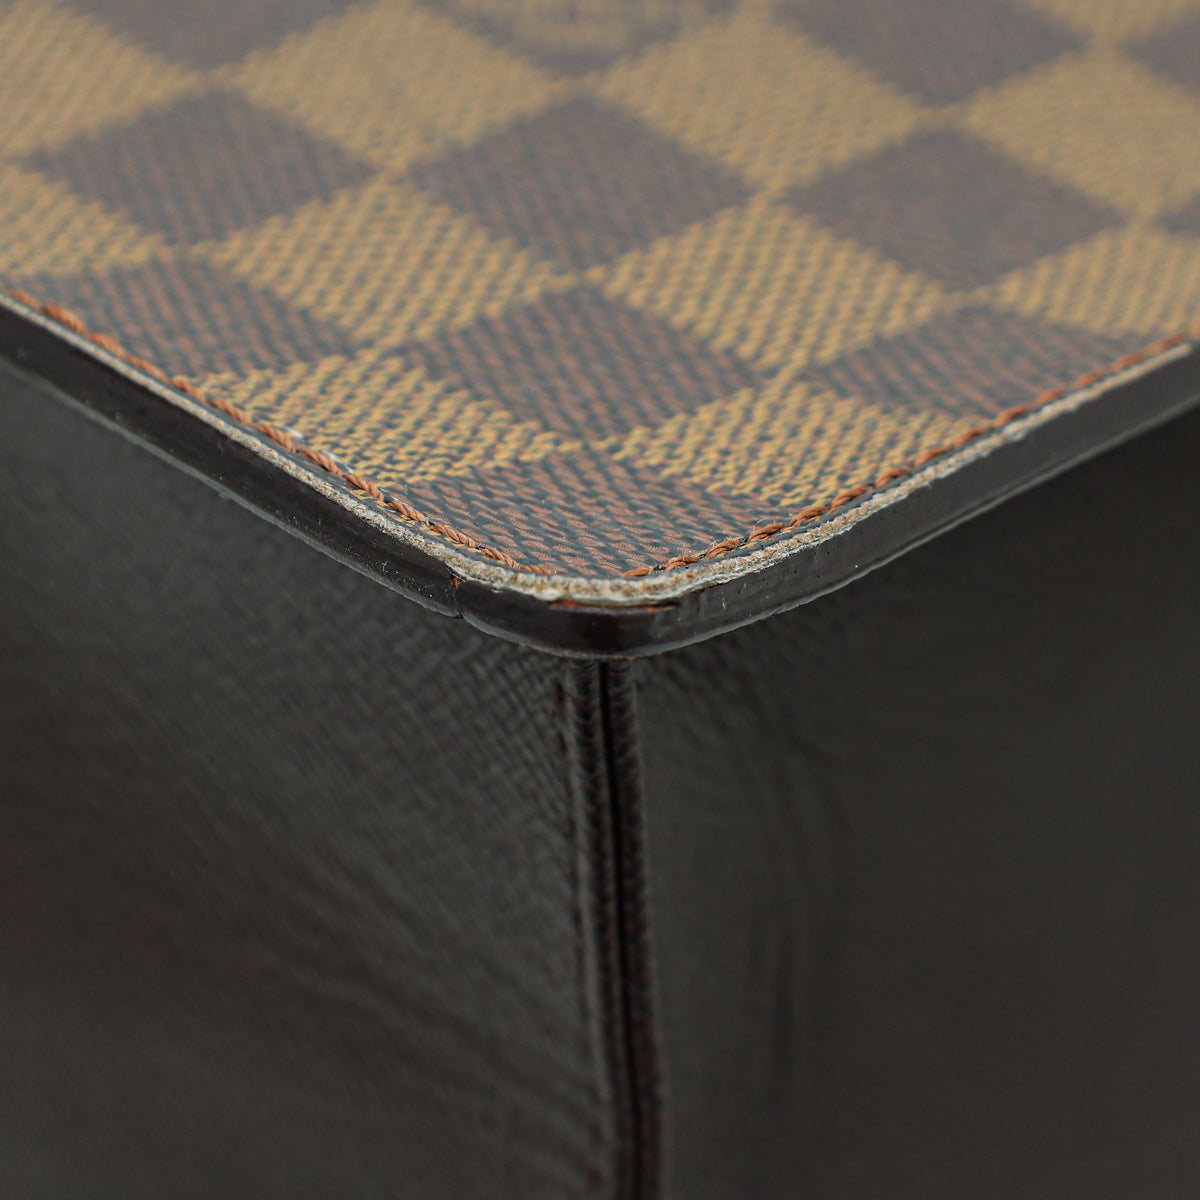 Louis Vuitton Damier Ebene Canvas Leather Sac Plat Pm Bag